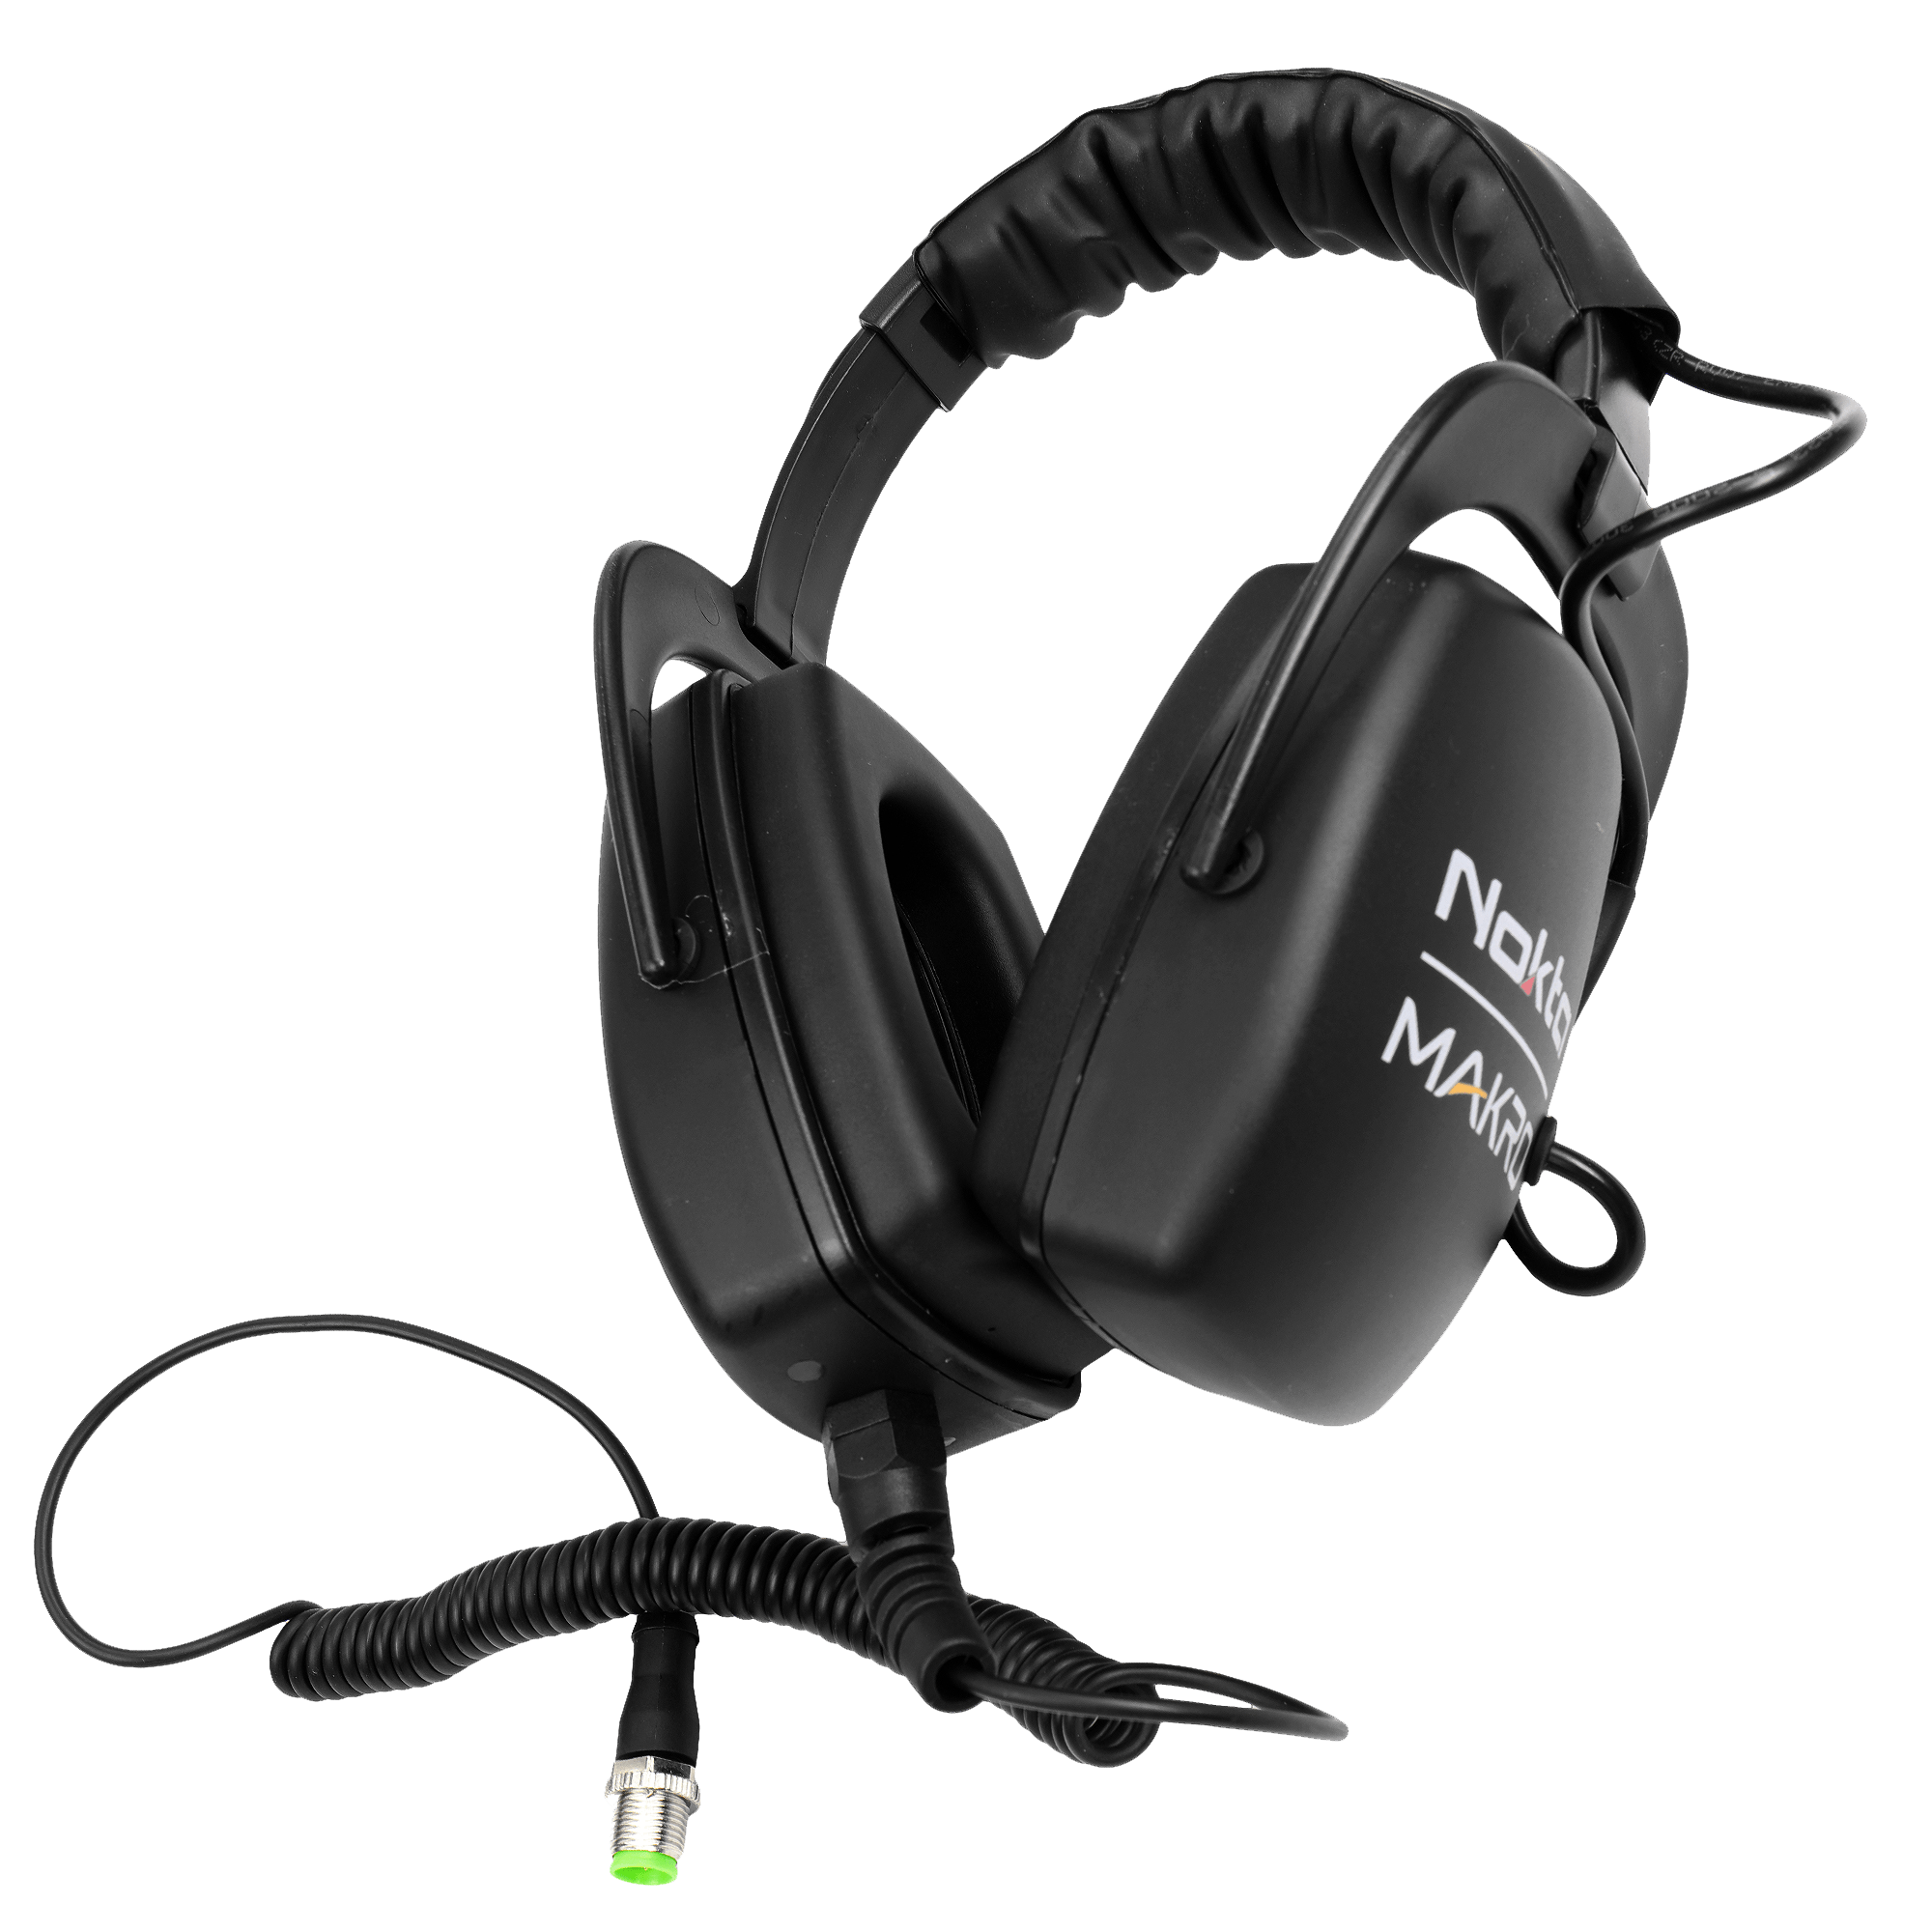 Nokta Makro – Waterproof Headphones